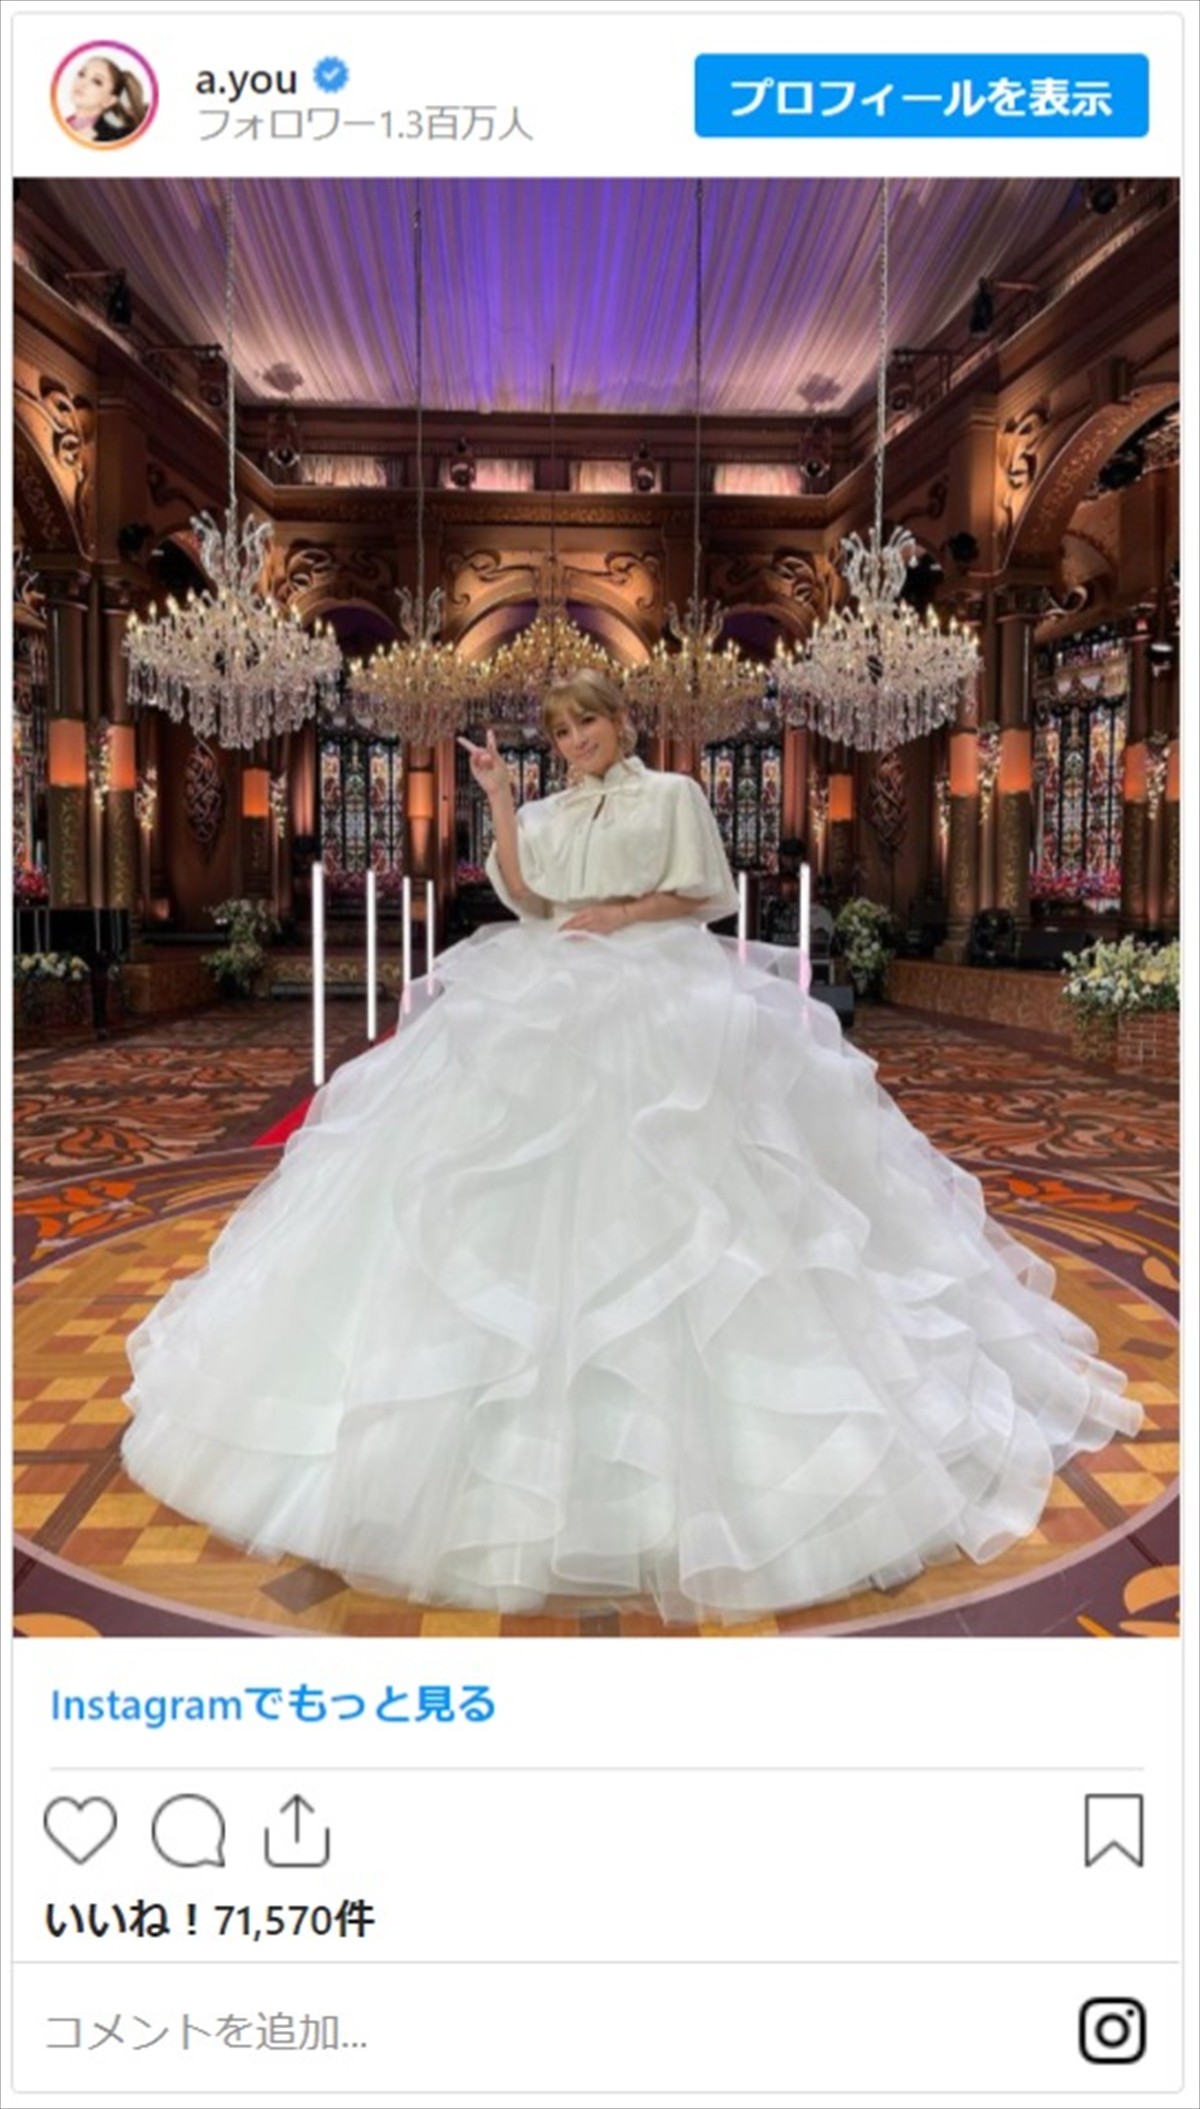 浜崎あゆみ「緊張の手汗でマイクずるんずるん」 純白ドレスのオフショット公開